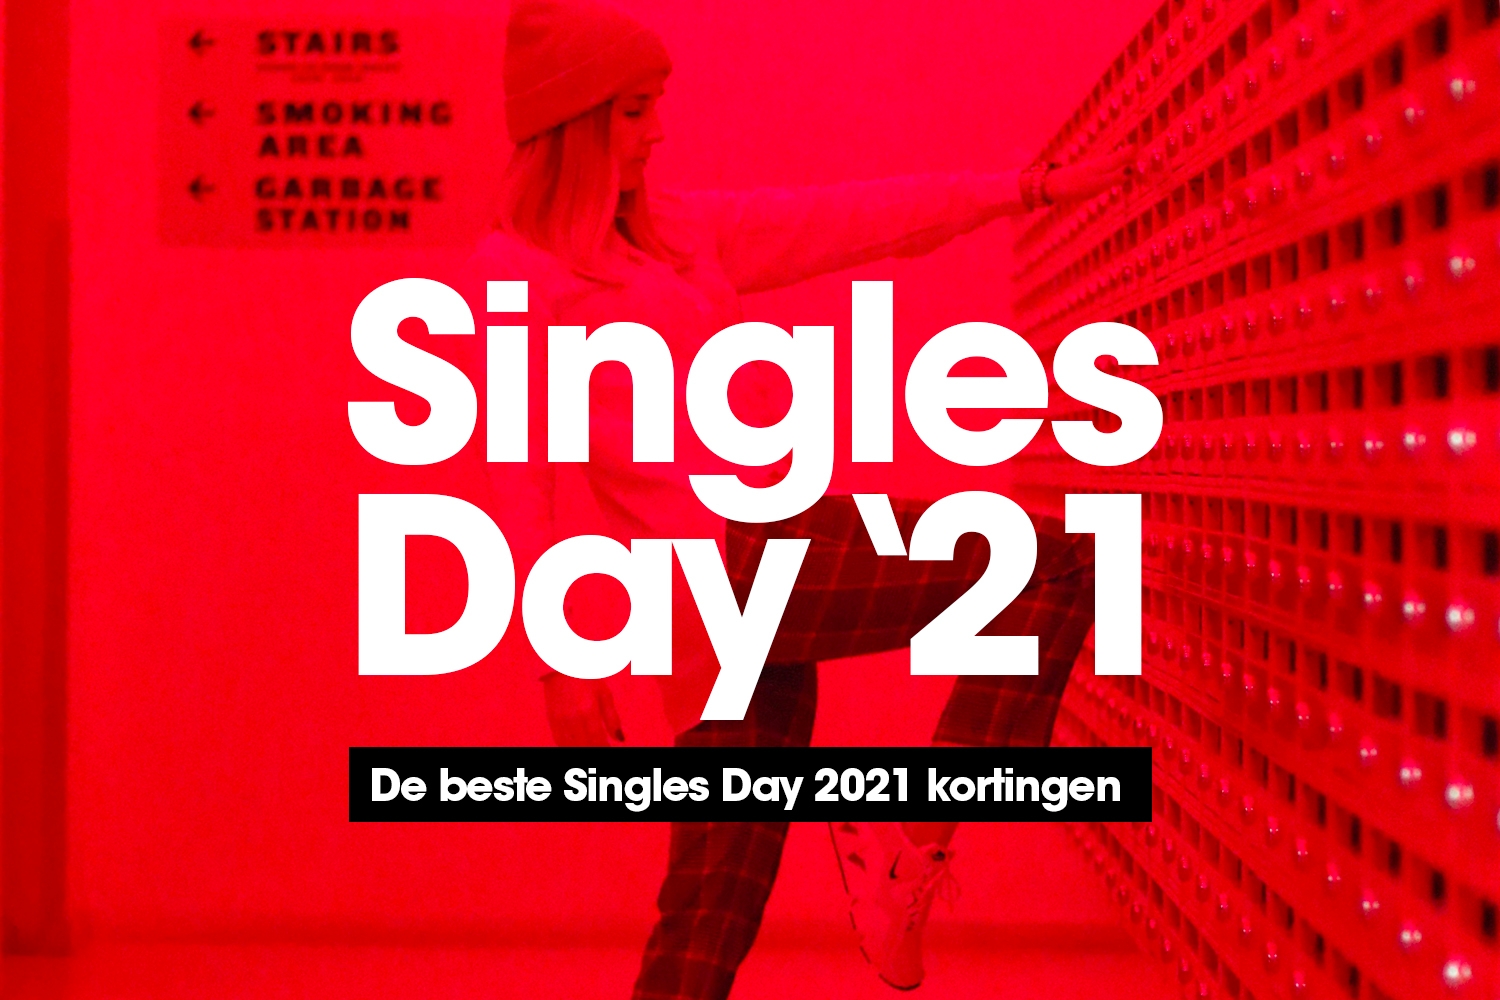 De beste Singles Day 2021 kortingen op een rijtje